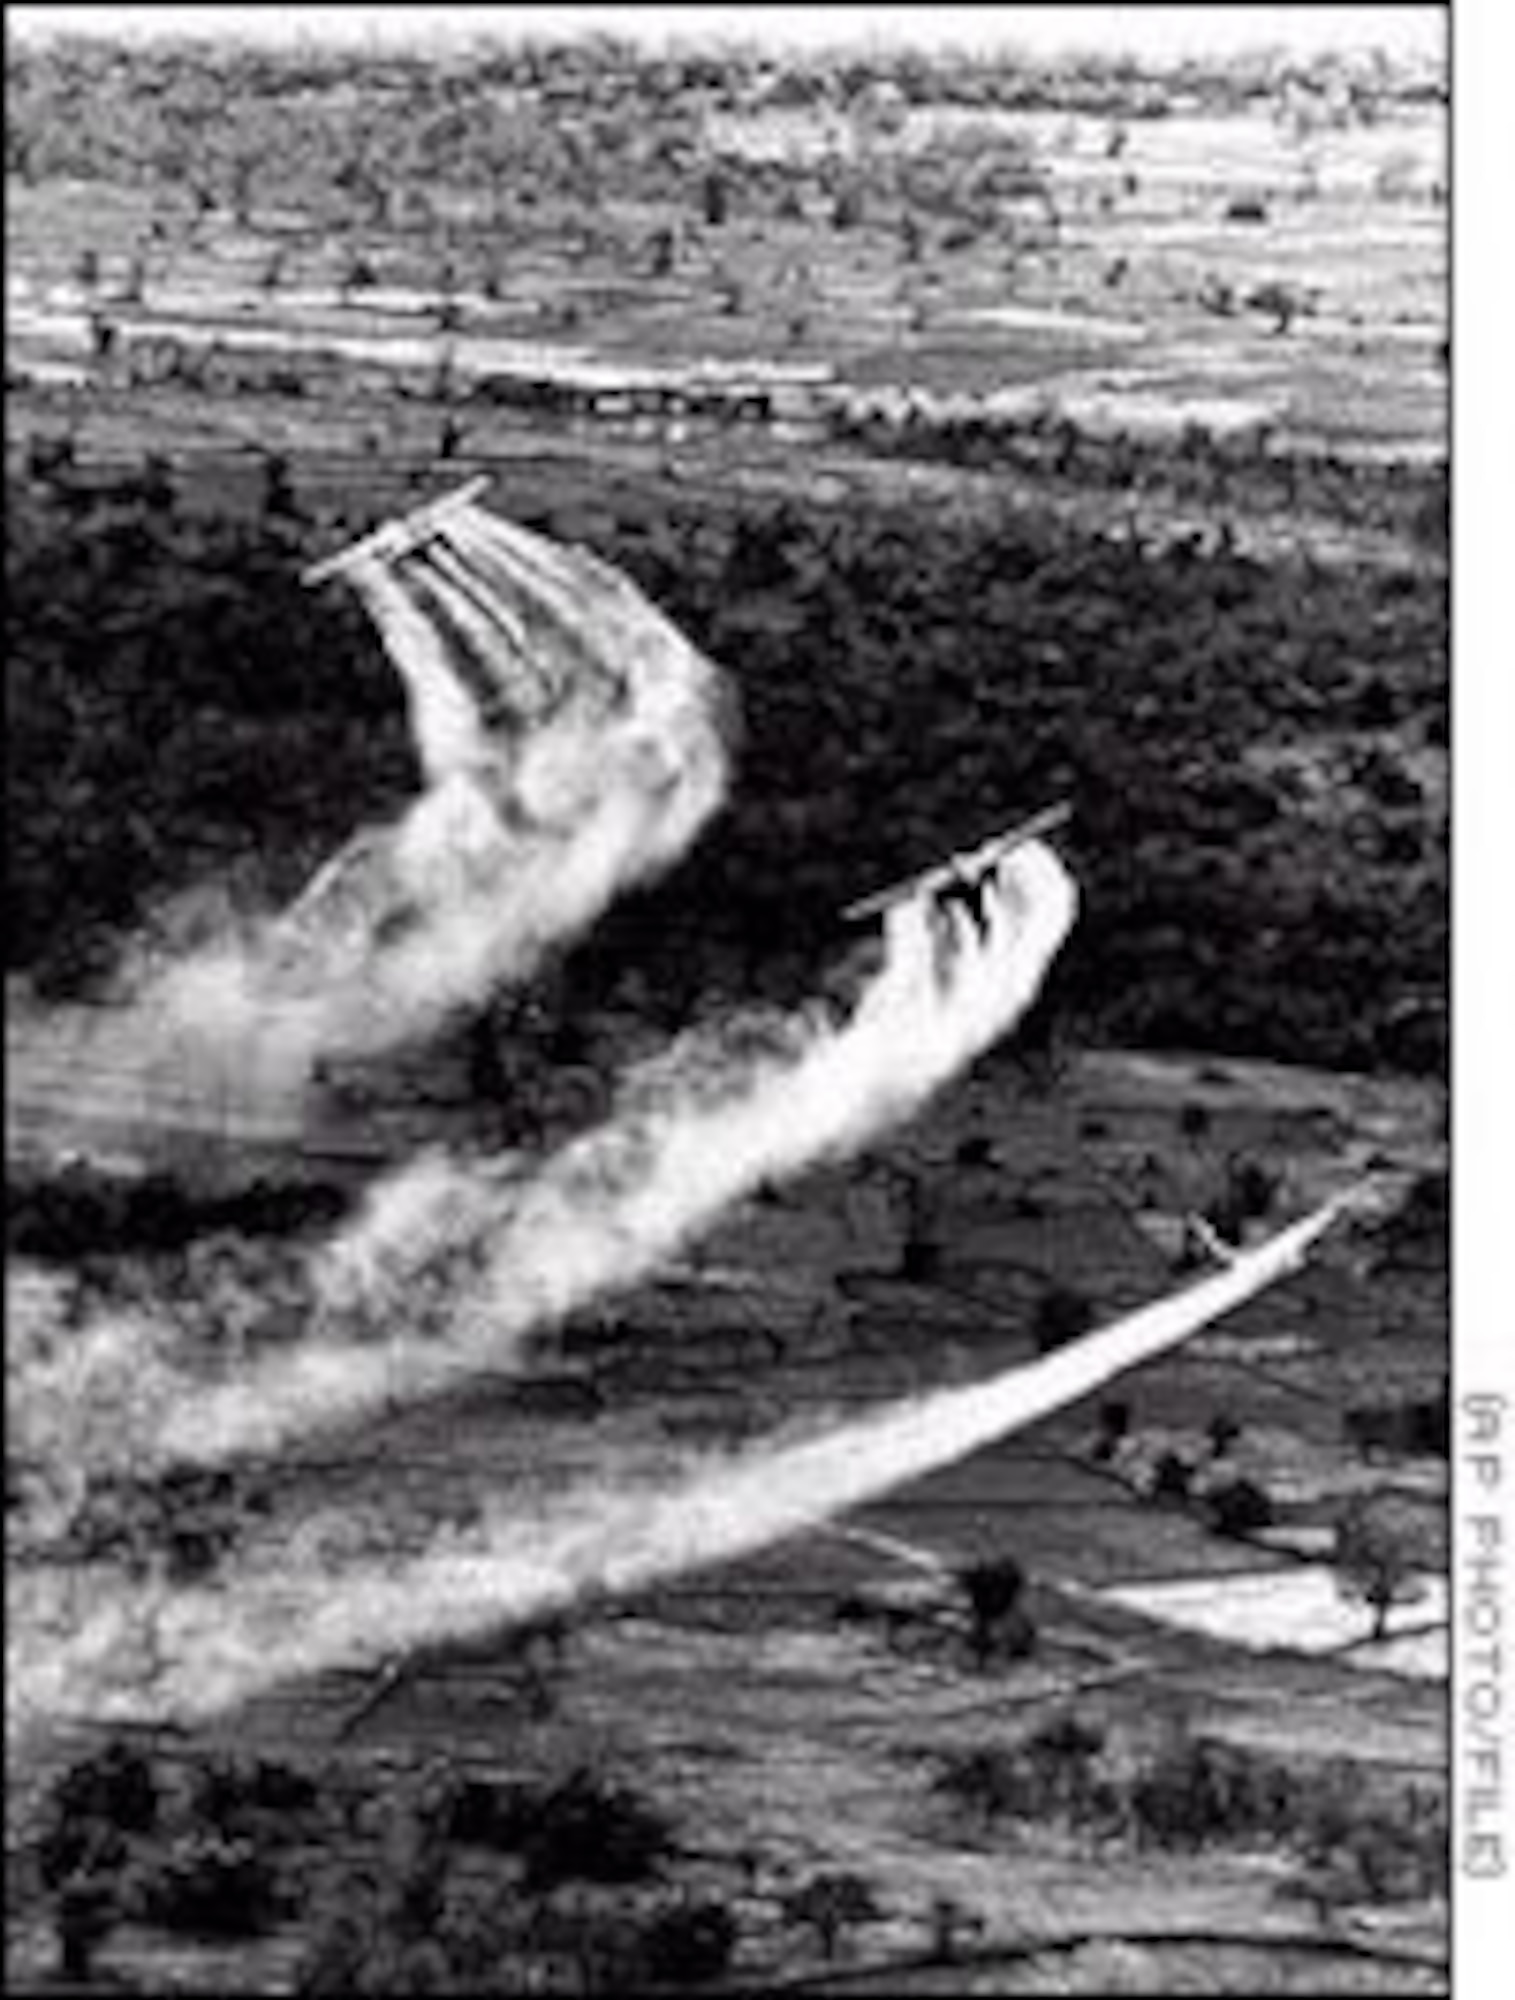 USAF aircraft spray herbicides in Vietnam